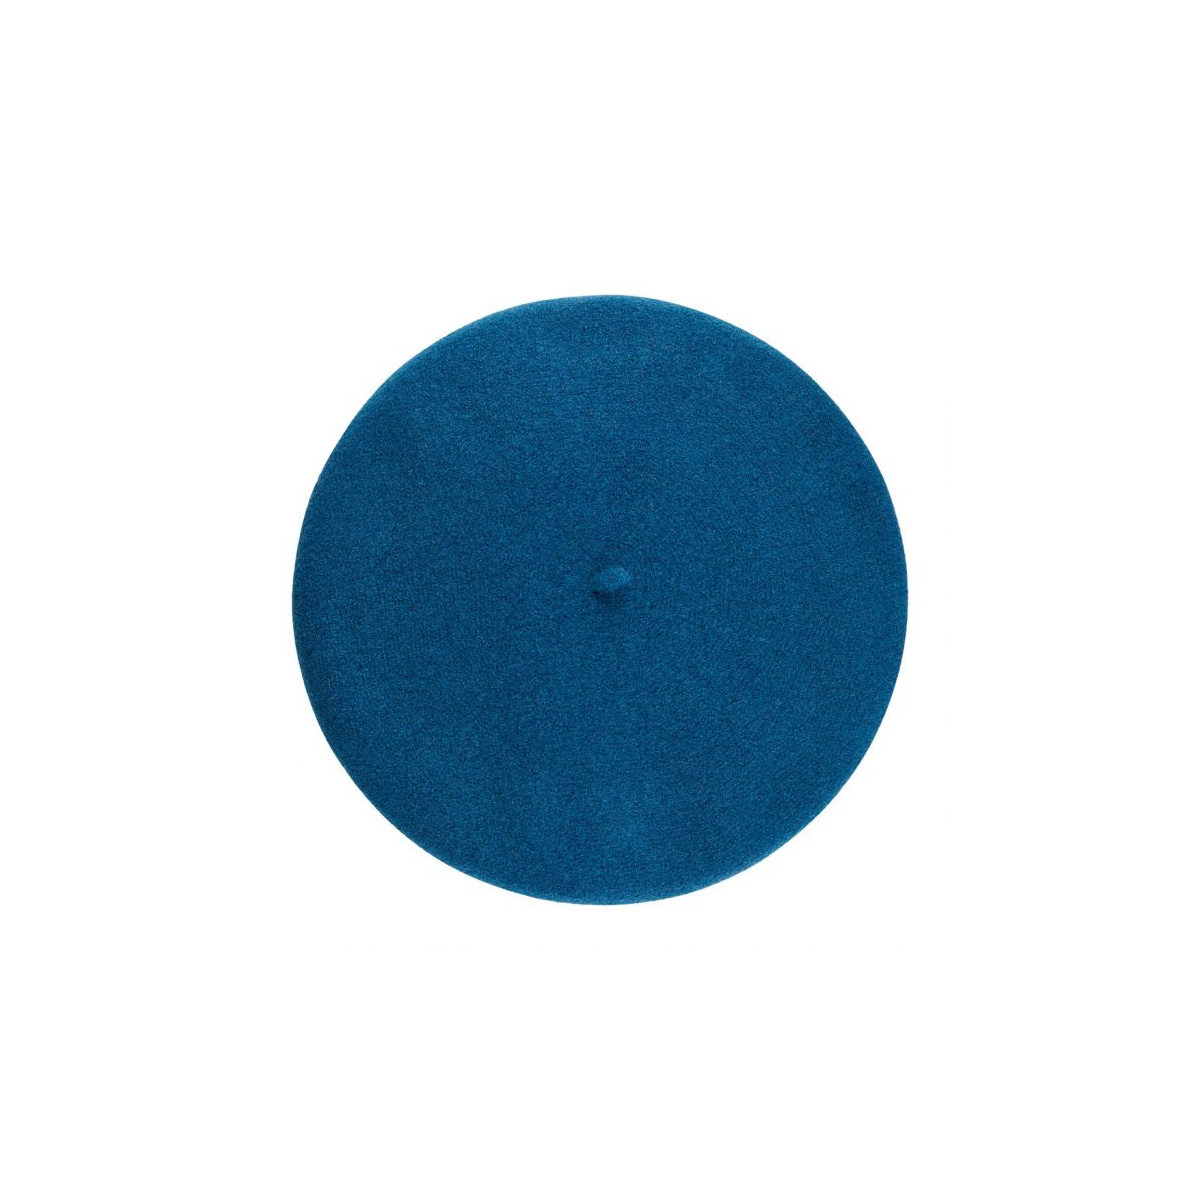 Boina bleu hombre - L'authentique bleu nuit Héritage par Laulhère : Headict